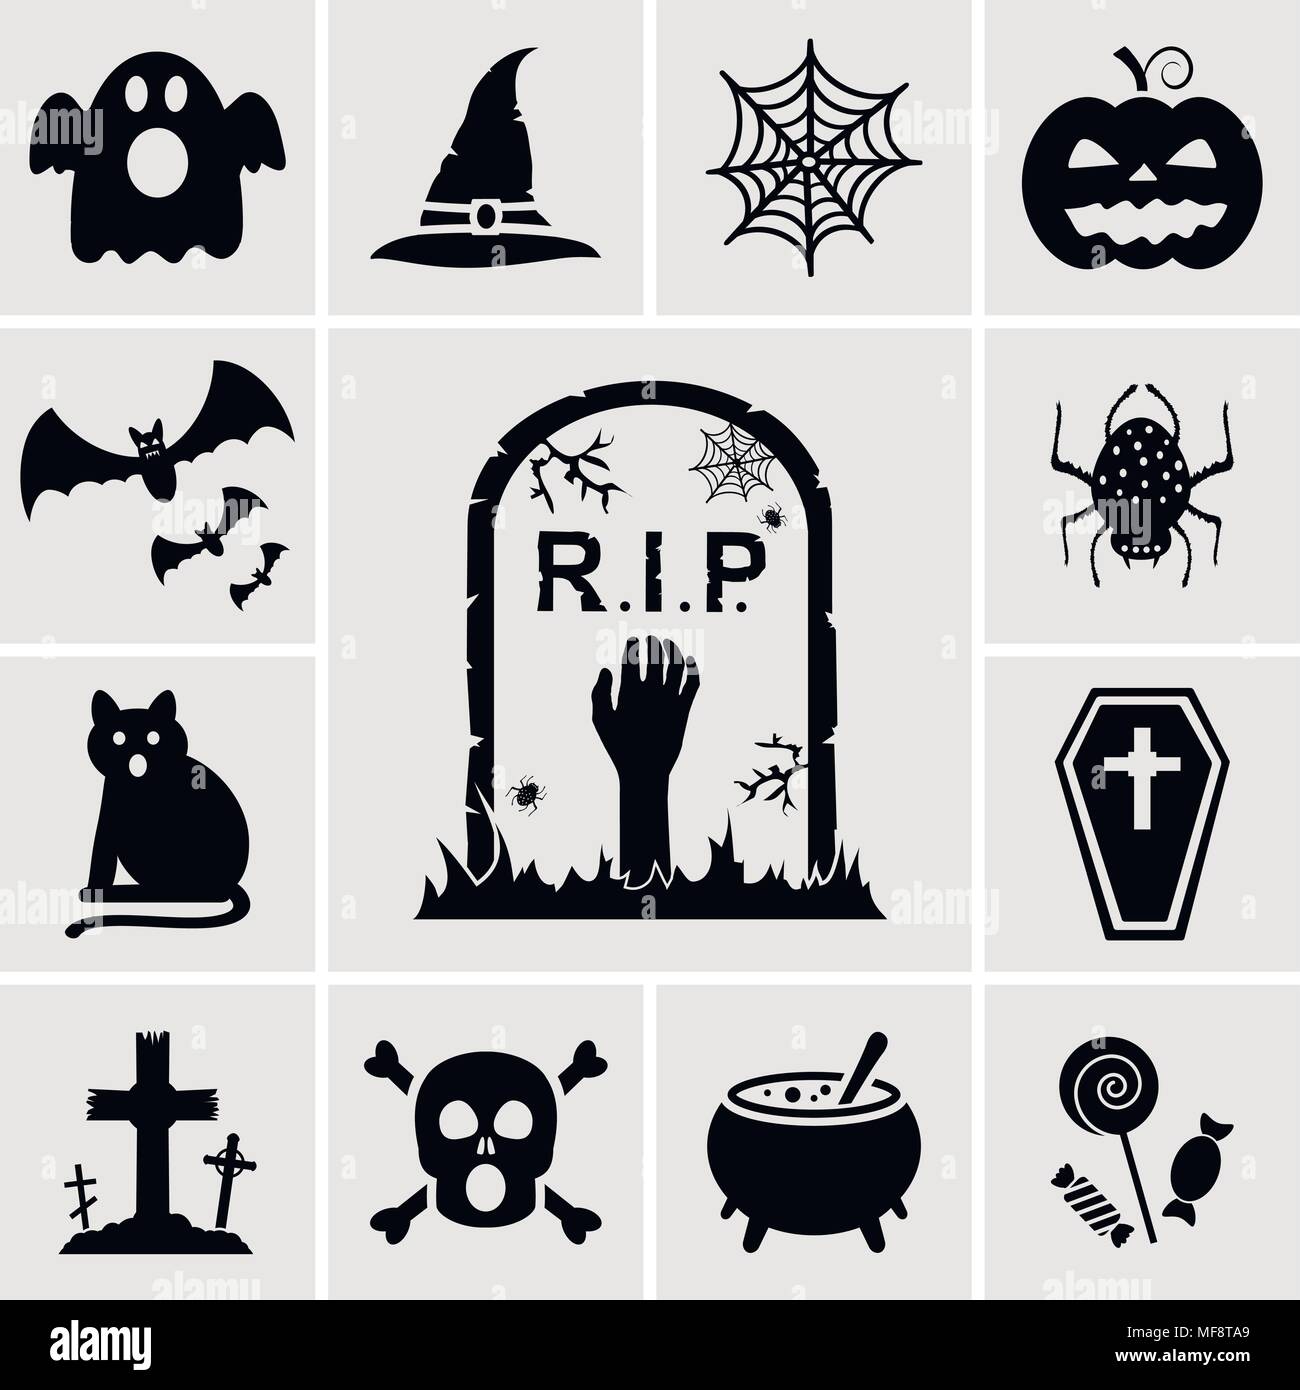 Vecteur Halloween icons set Illustration de Vecteur